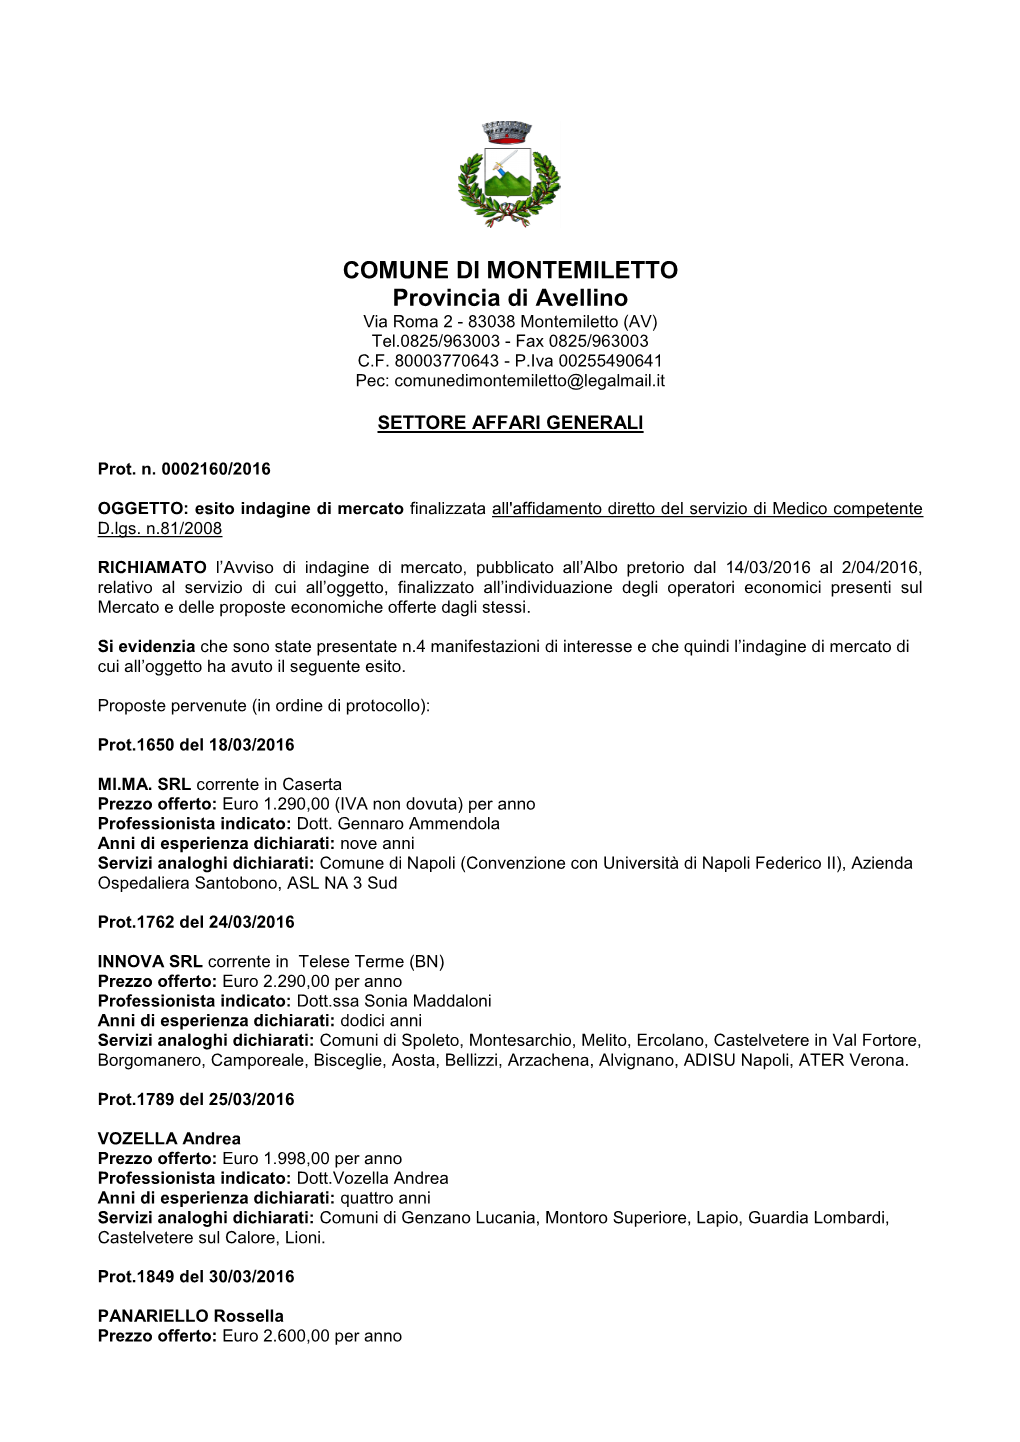 COMUNE DI MONTEMILETTO Provincia Di Avellino Via Roma 2 - 83038 Montemiletto (AV) Tel.0825/963003 - Fax 0825/963003 C.F